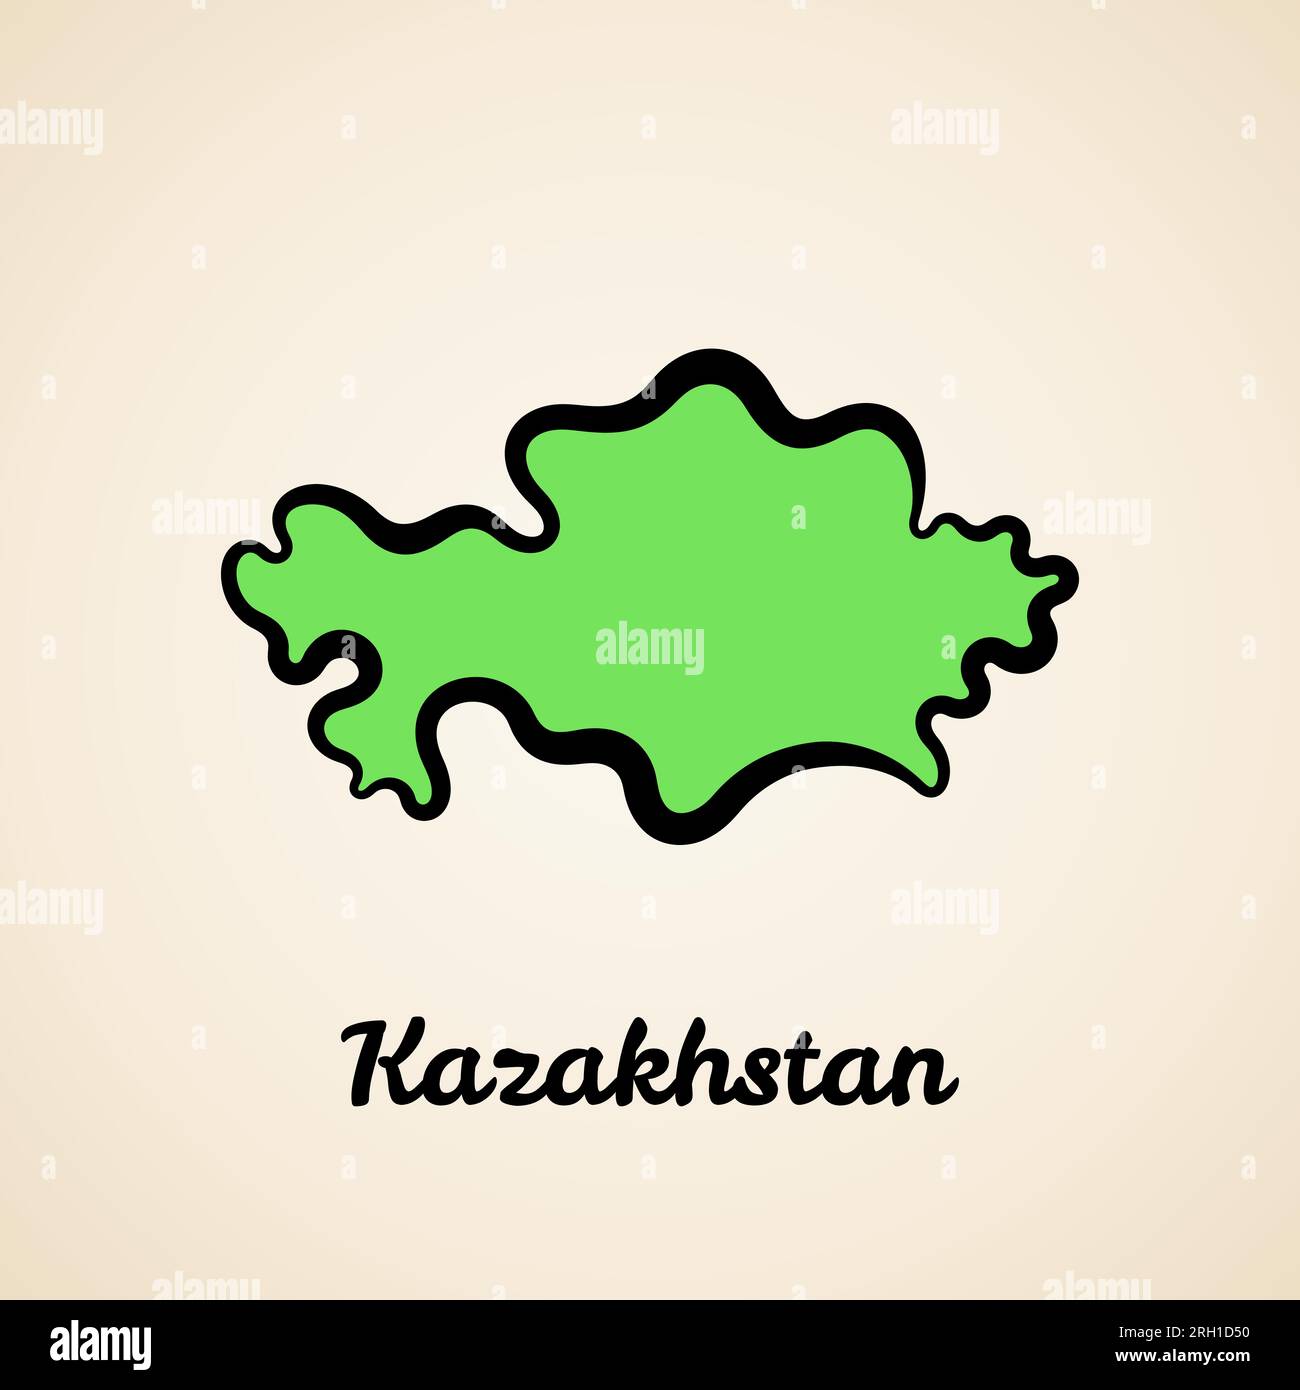 Grüne vereinfachte Karte Kasachstans mit schwarzer Umrandung. Stock Vektor